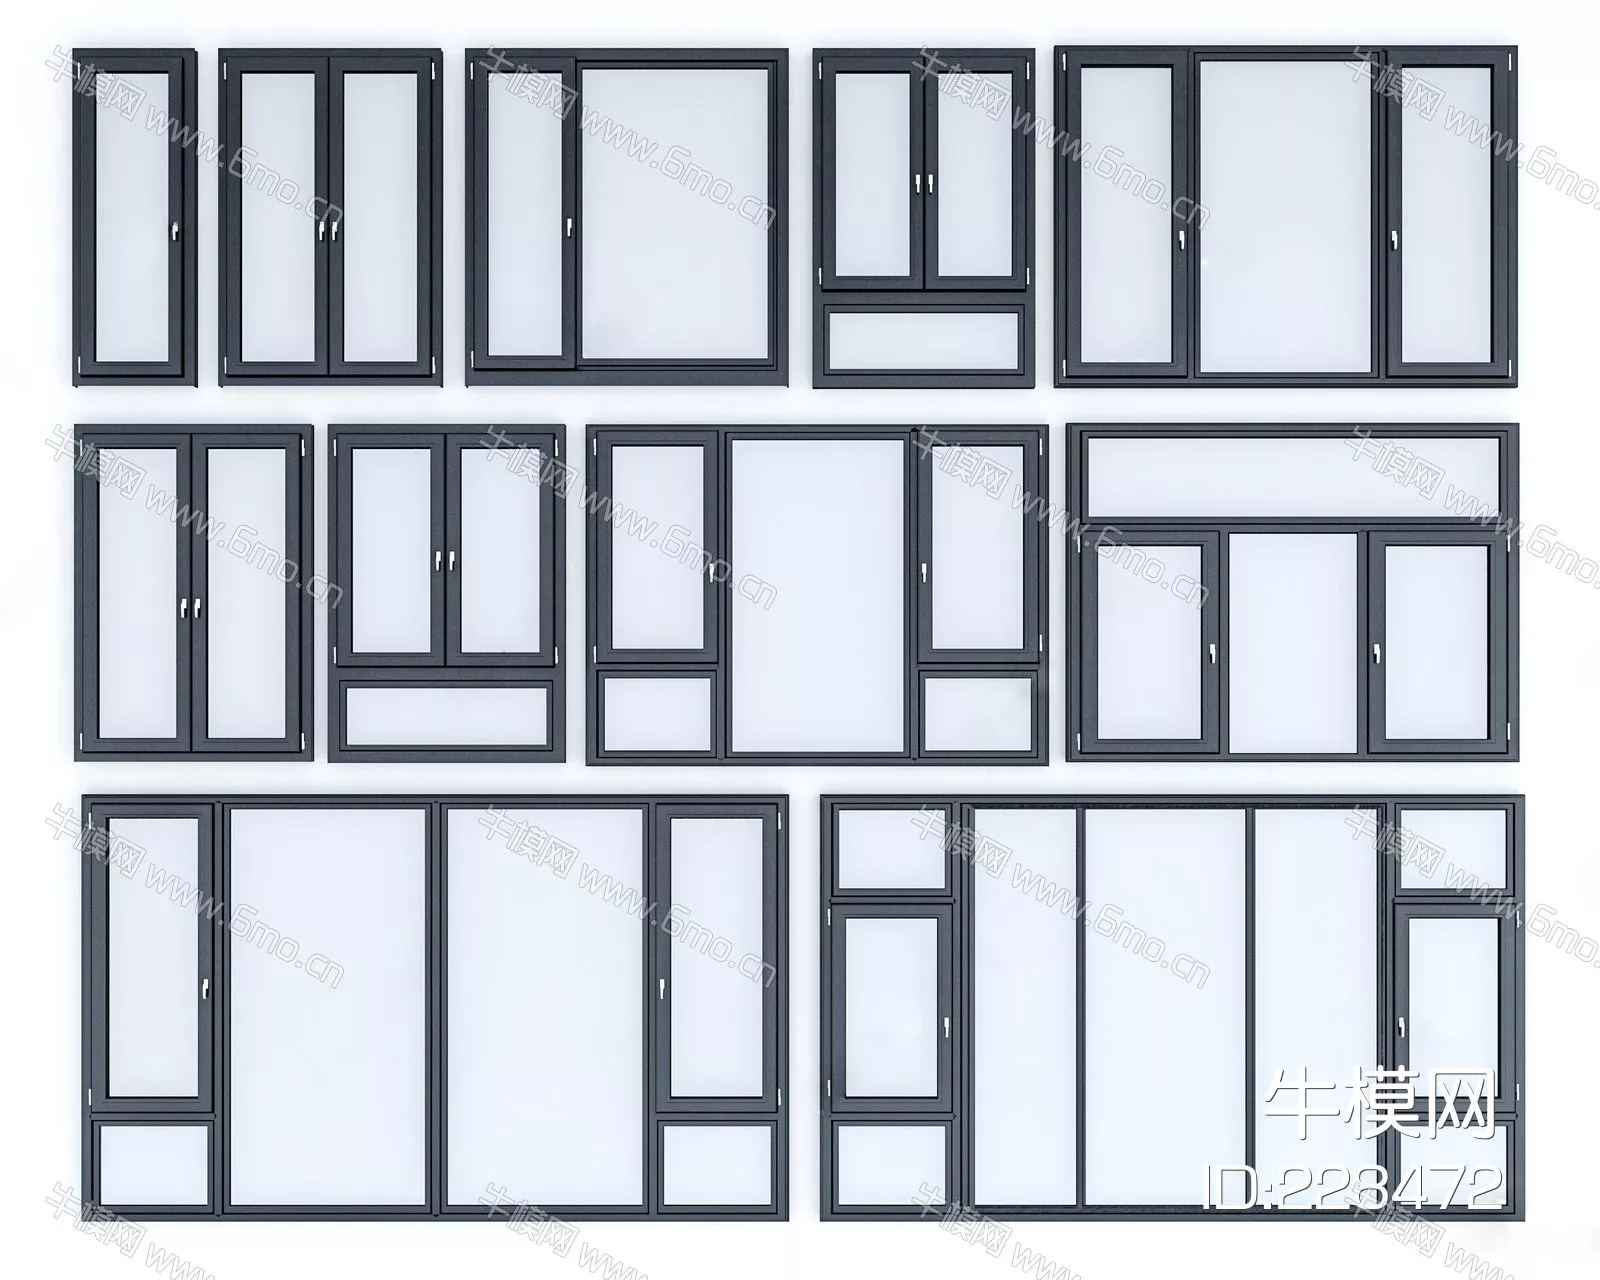 MODERN DOOR AND WINDOWS - SKETCHUP 3D MODEL - VRAY - 228472